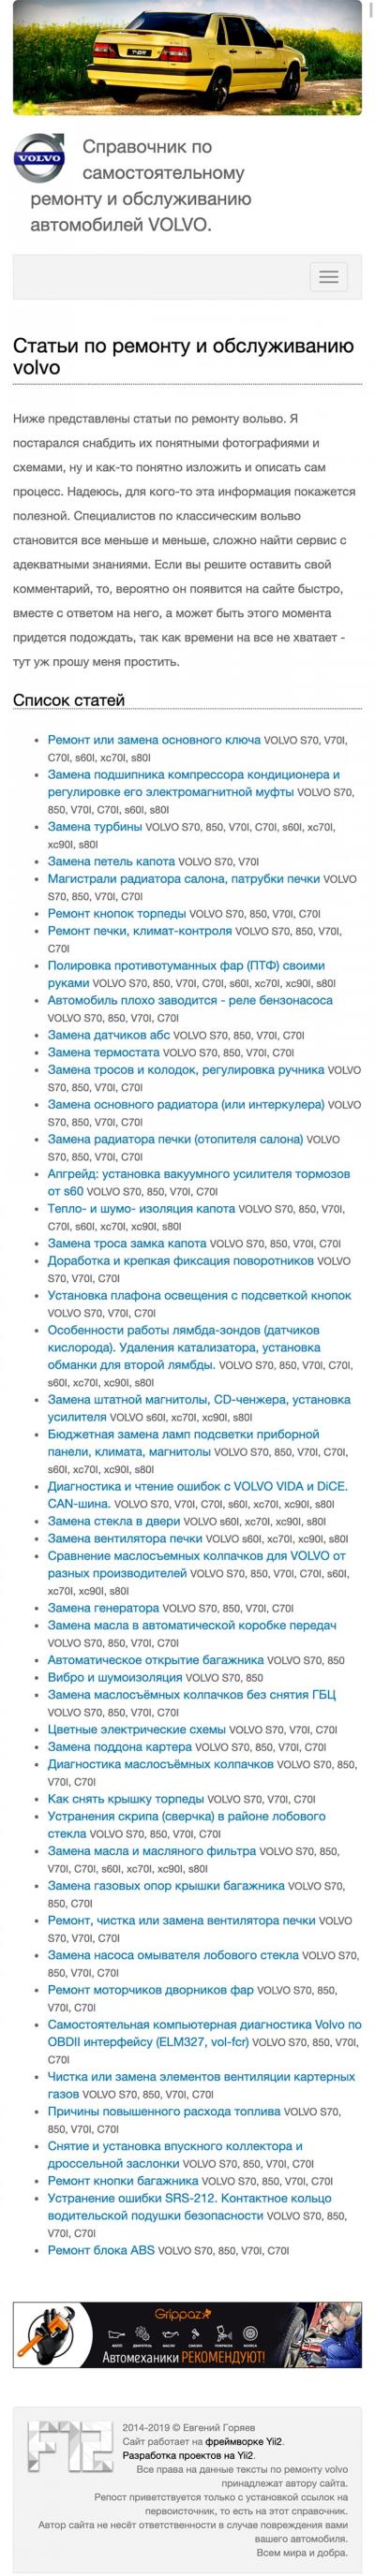 Мобильная версия сайта Справочник по самостоятельному ремонту VOLVO